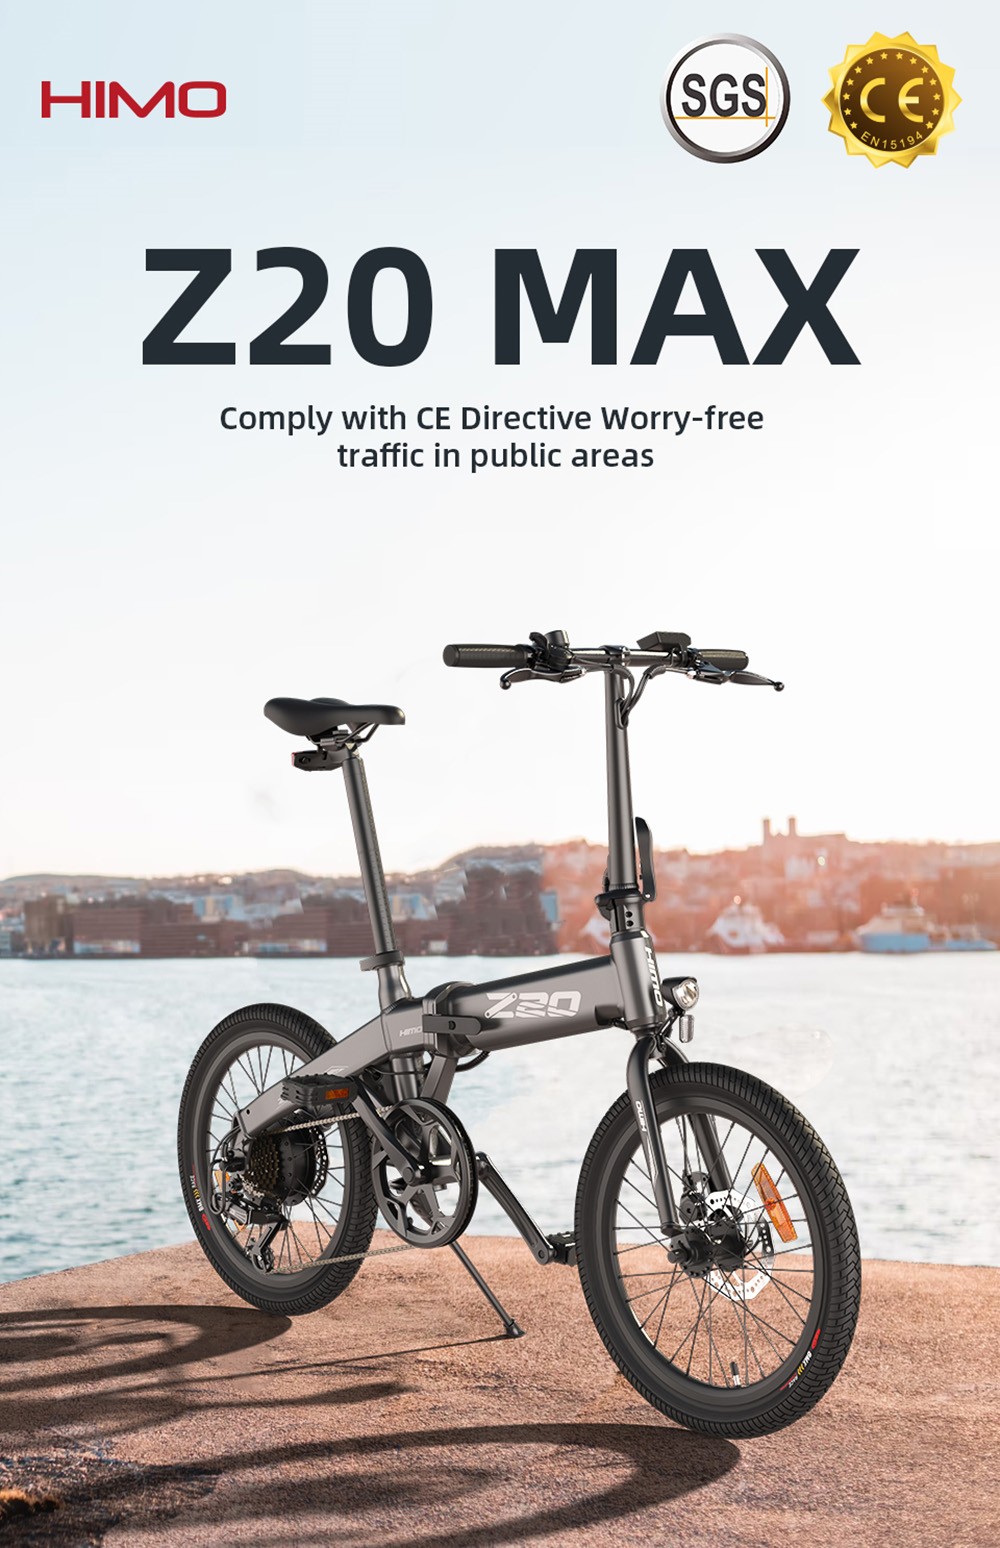 HIMO Z20 Max bicicletta elettrica 250 W motore 20 pollici fino a 25 km/h con acceleratore a pedale e modalità E-assist pneumatici per tutte le stagioni - bianco